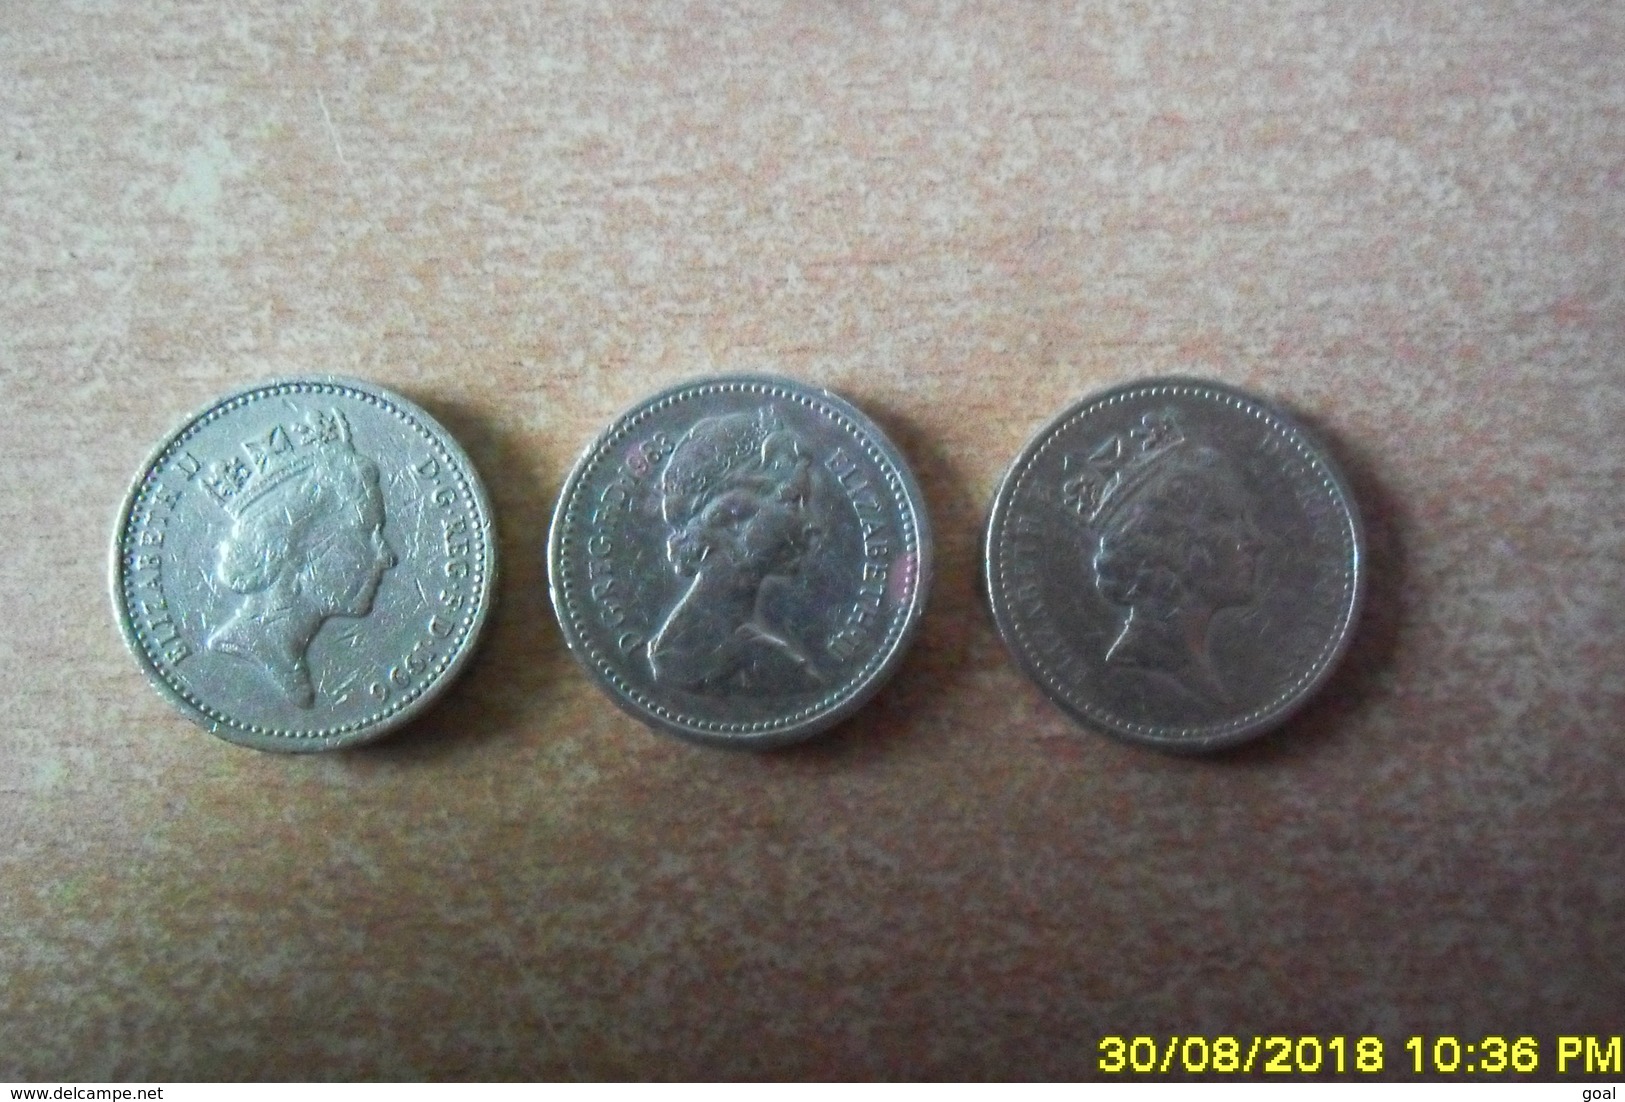 3 Monnaies De 1 Pound /Avers Différent/1983-1985-1996 En TTB. - 1 Pound